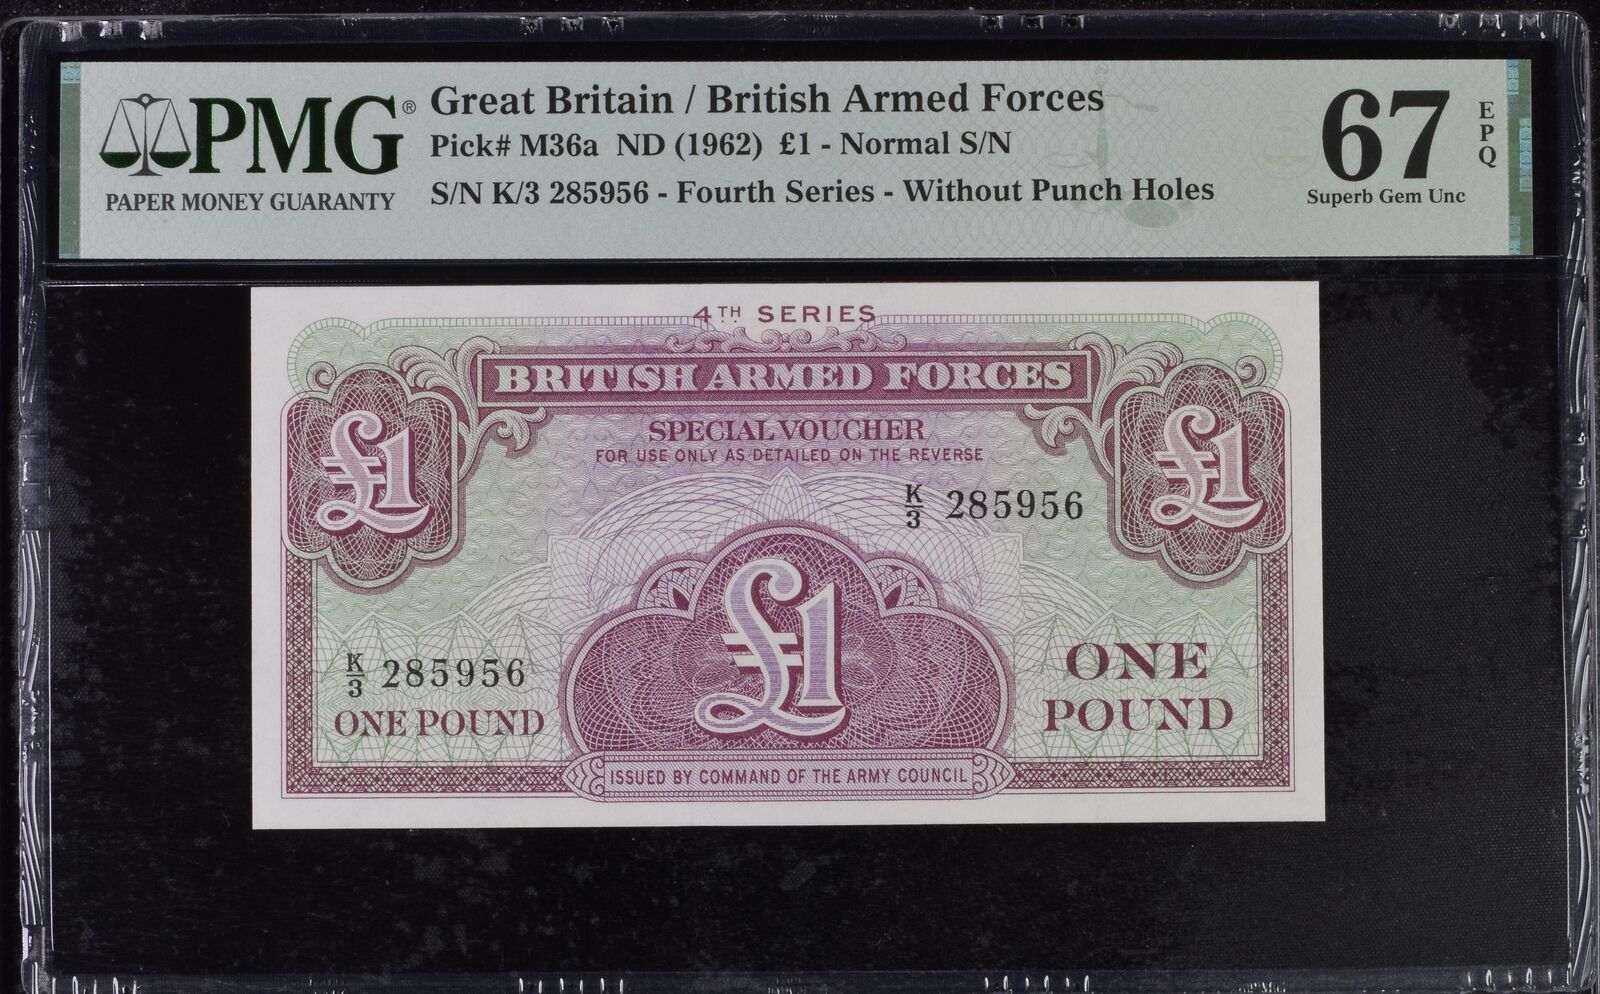 Great Britain 1 Pound ND 1962 P M36 a Superb GEM UNC PMG 67 EPQ